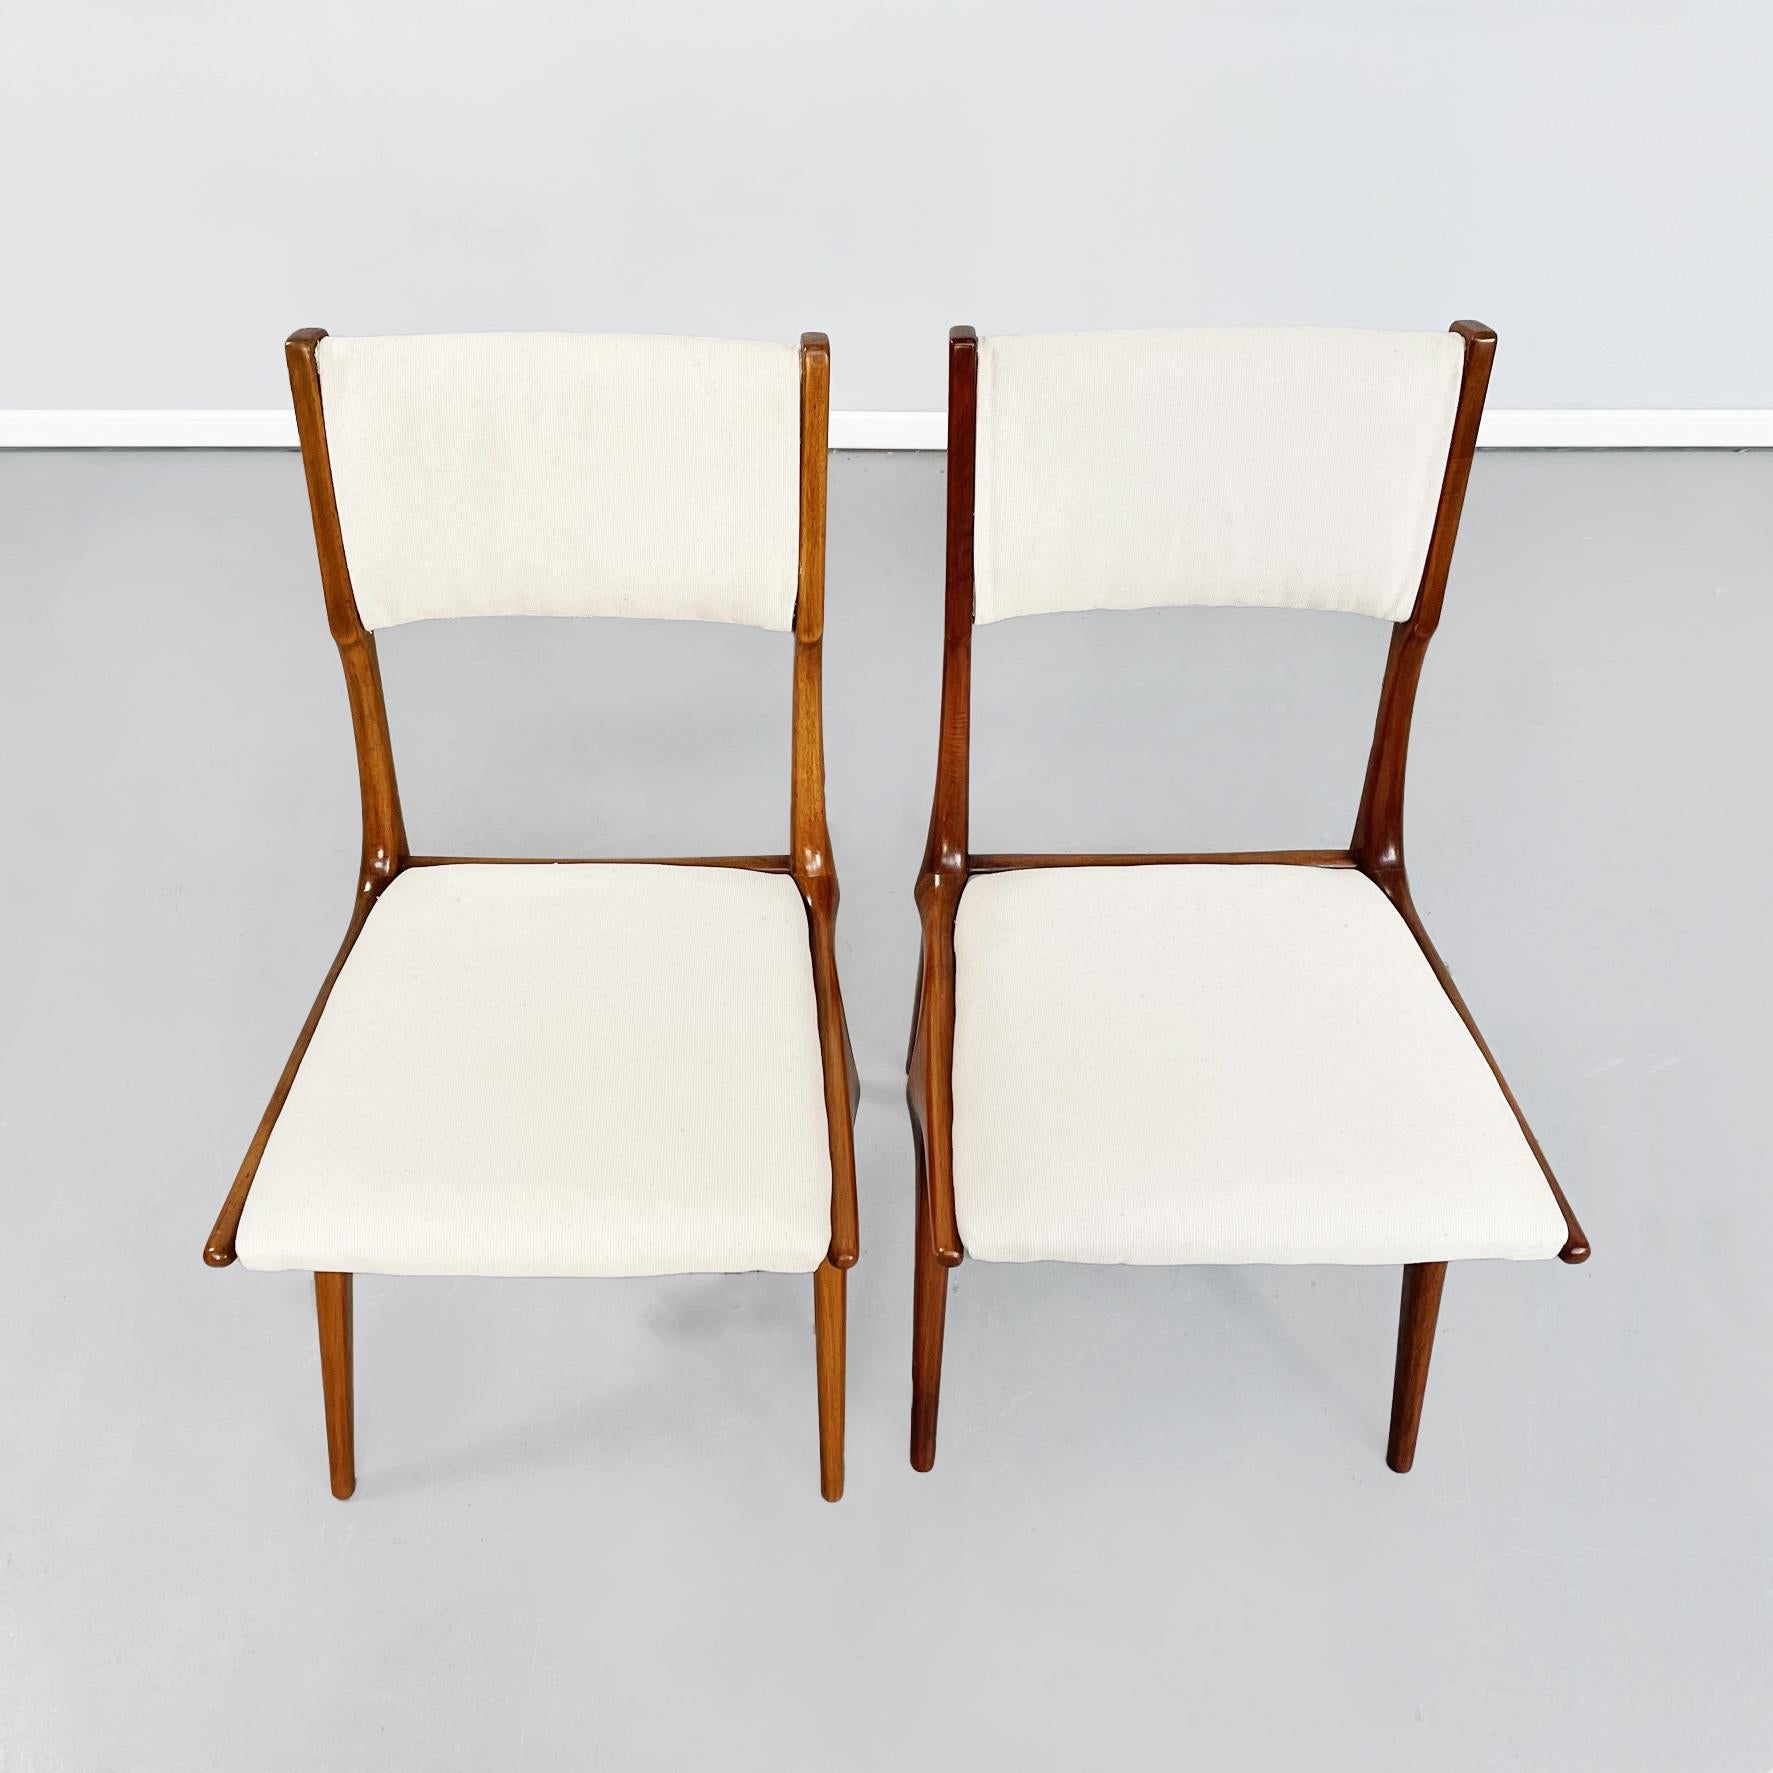 Italinische Stühle der Jahrhundertmitte Weißer Stoff und Holz von De Carli für Cassina, 1958
Paar Stühle aus Massivholz, elegante und abgerundete Struktur.
Sitz und Rückenlehne sind gepolstert und mit cremeweißem Stoff bezogen.
Hergestellt von